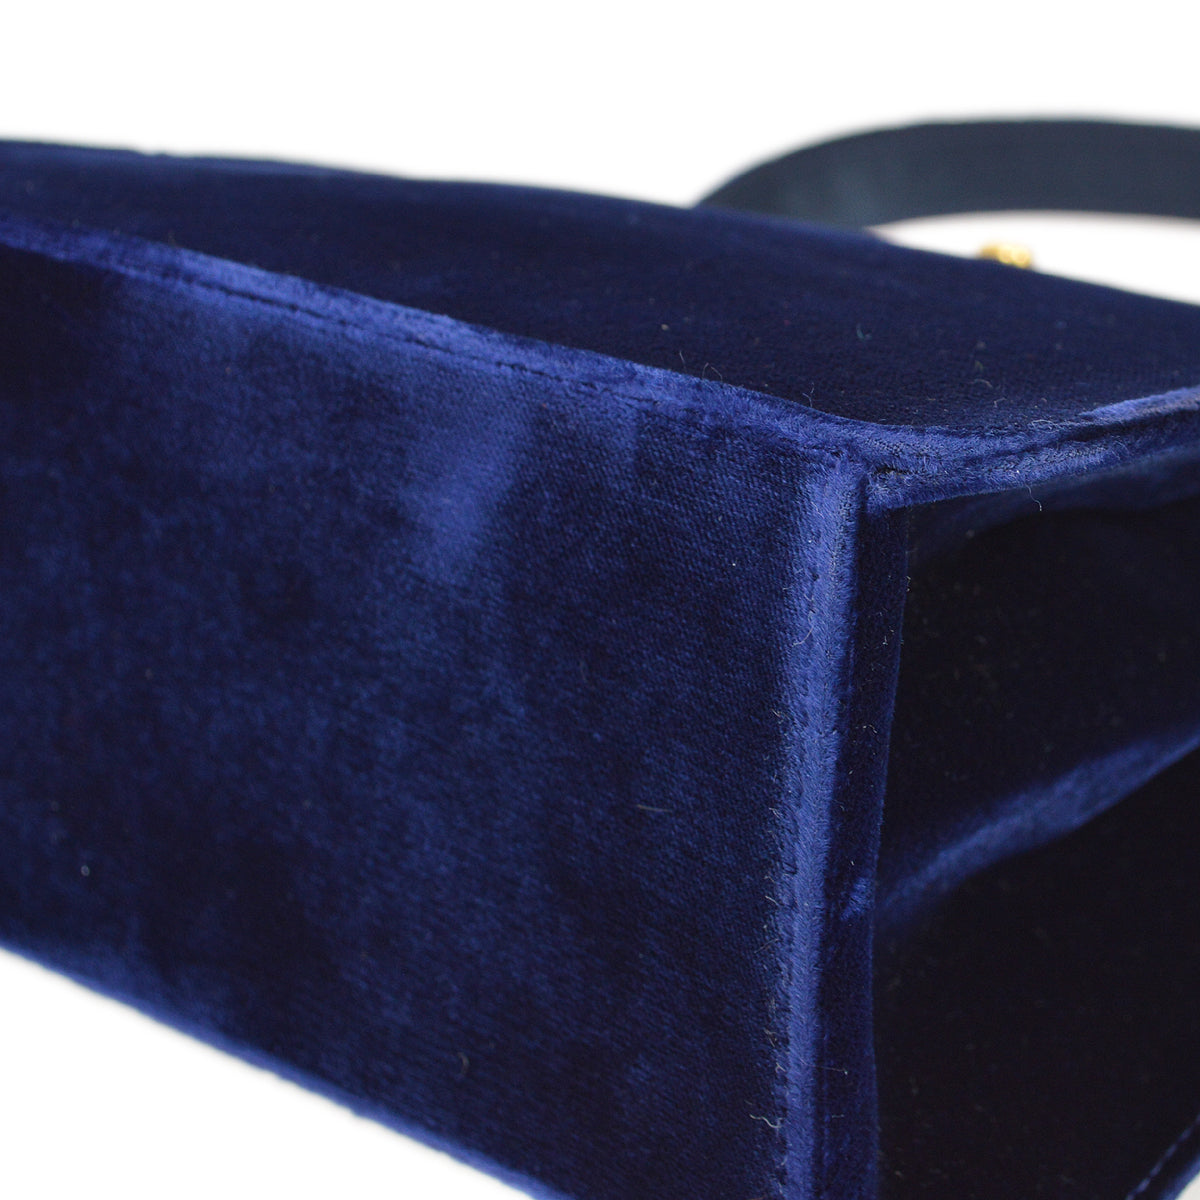 香奈兒* 1997-1999 藍色天鵝絨雙面旋鎖手提包